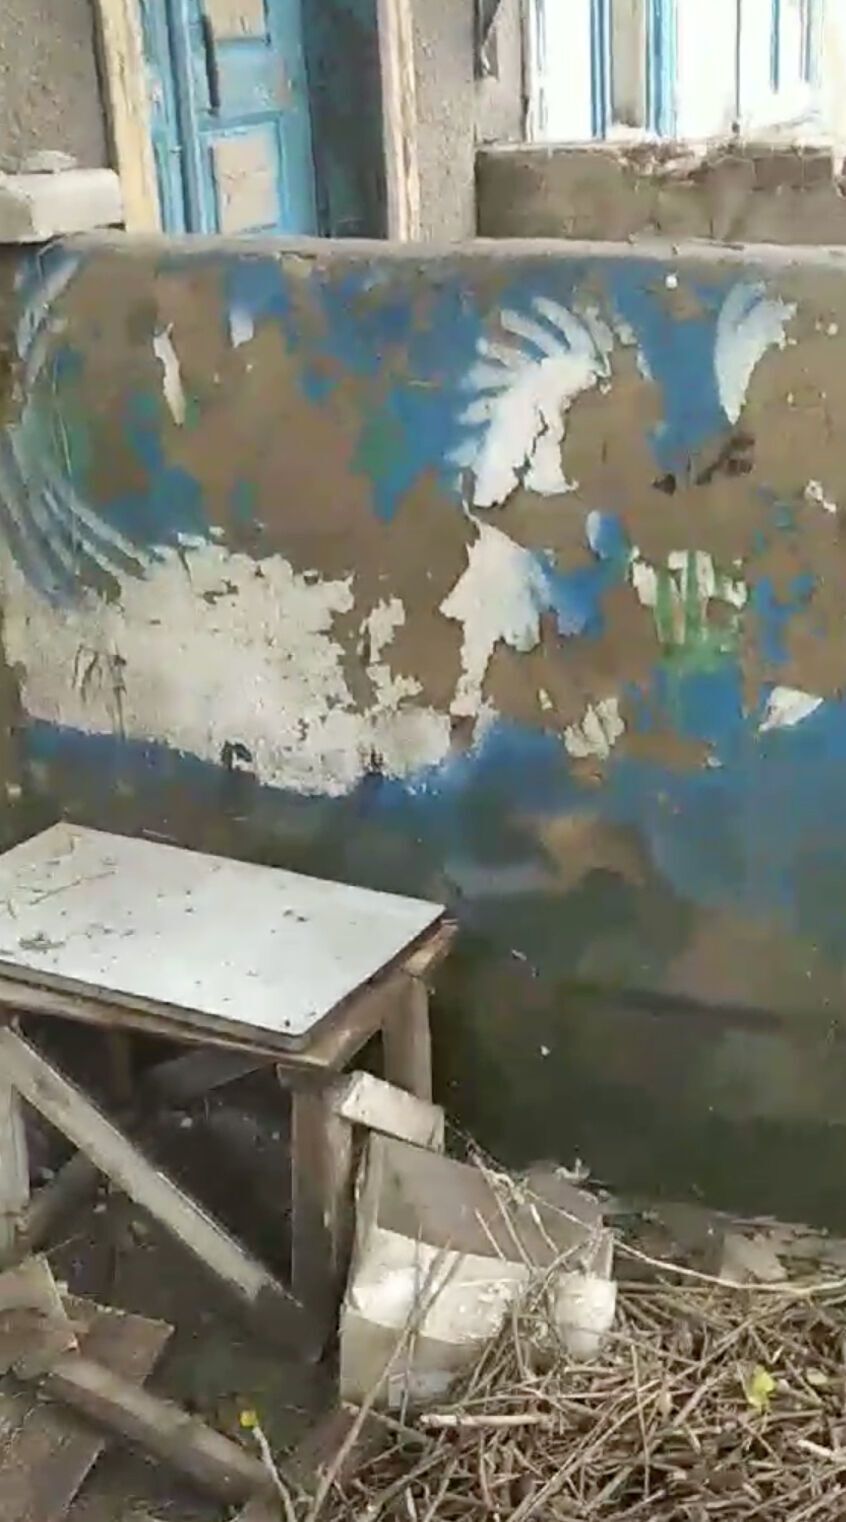 В оккупированных Олешках из дома-музея Полины Райко ушла вода: стены обрушились, уцелело всего до 40% фресок. Фото и видео